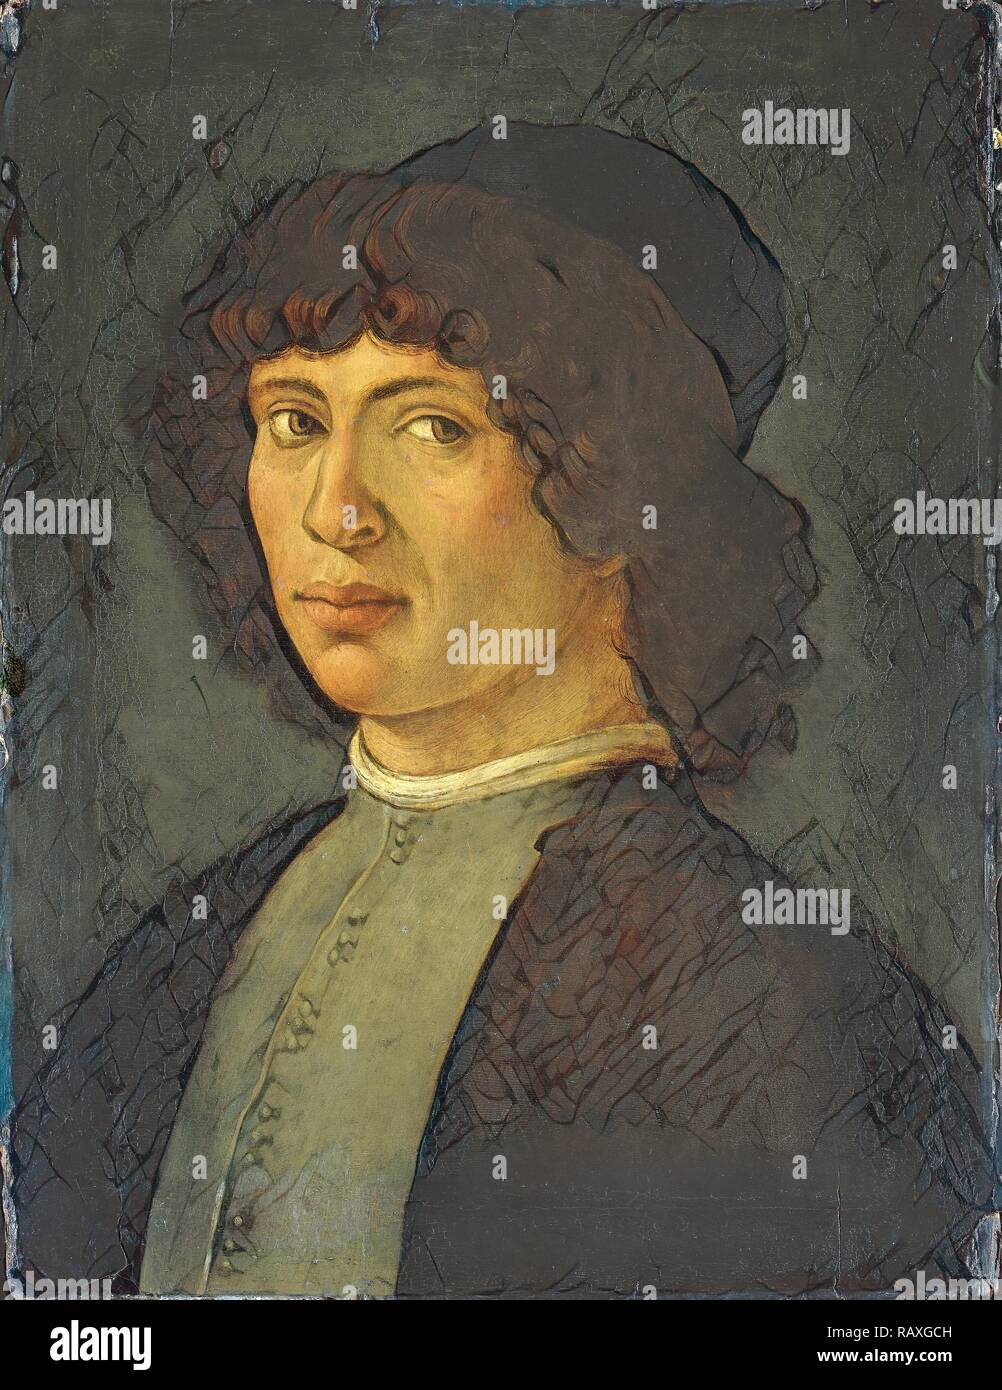 Ritratto di un giovane uomo, modo di Filippino Lippi, 1750 - 1850. Reinventato da Gibon. Arte Classica con un tocco di moderno reinventato Foto Stock